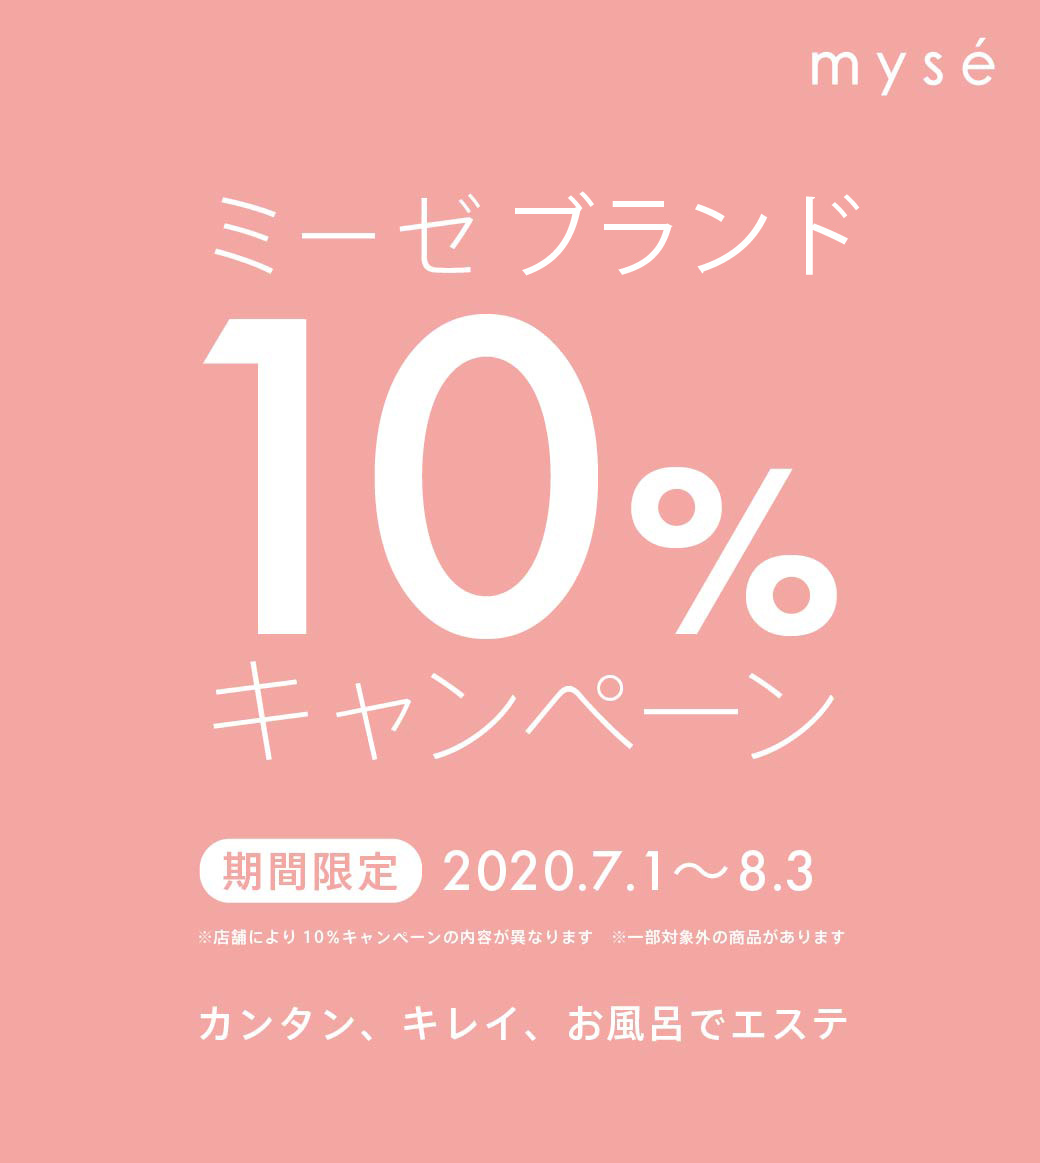 ミーゼシリーズ10%キャンペーン